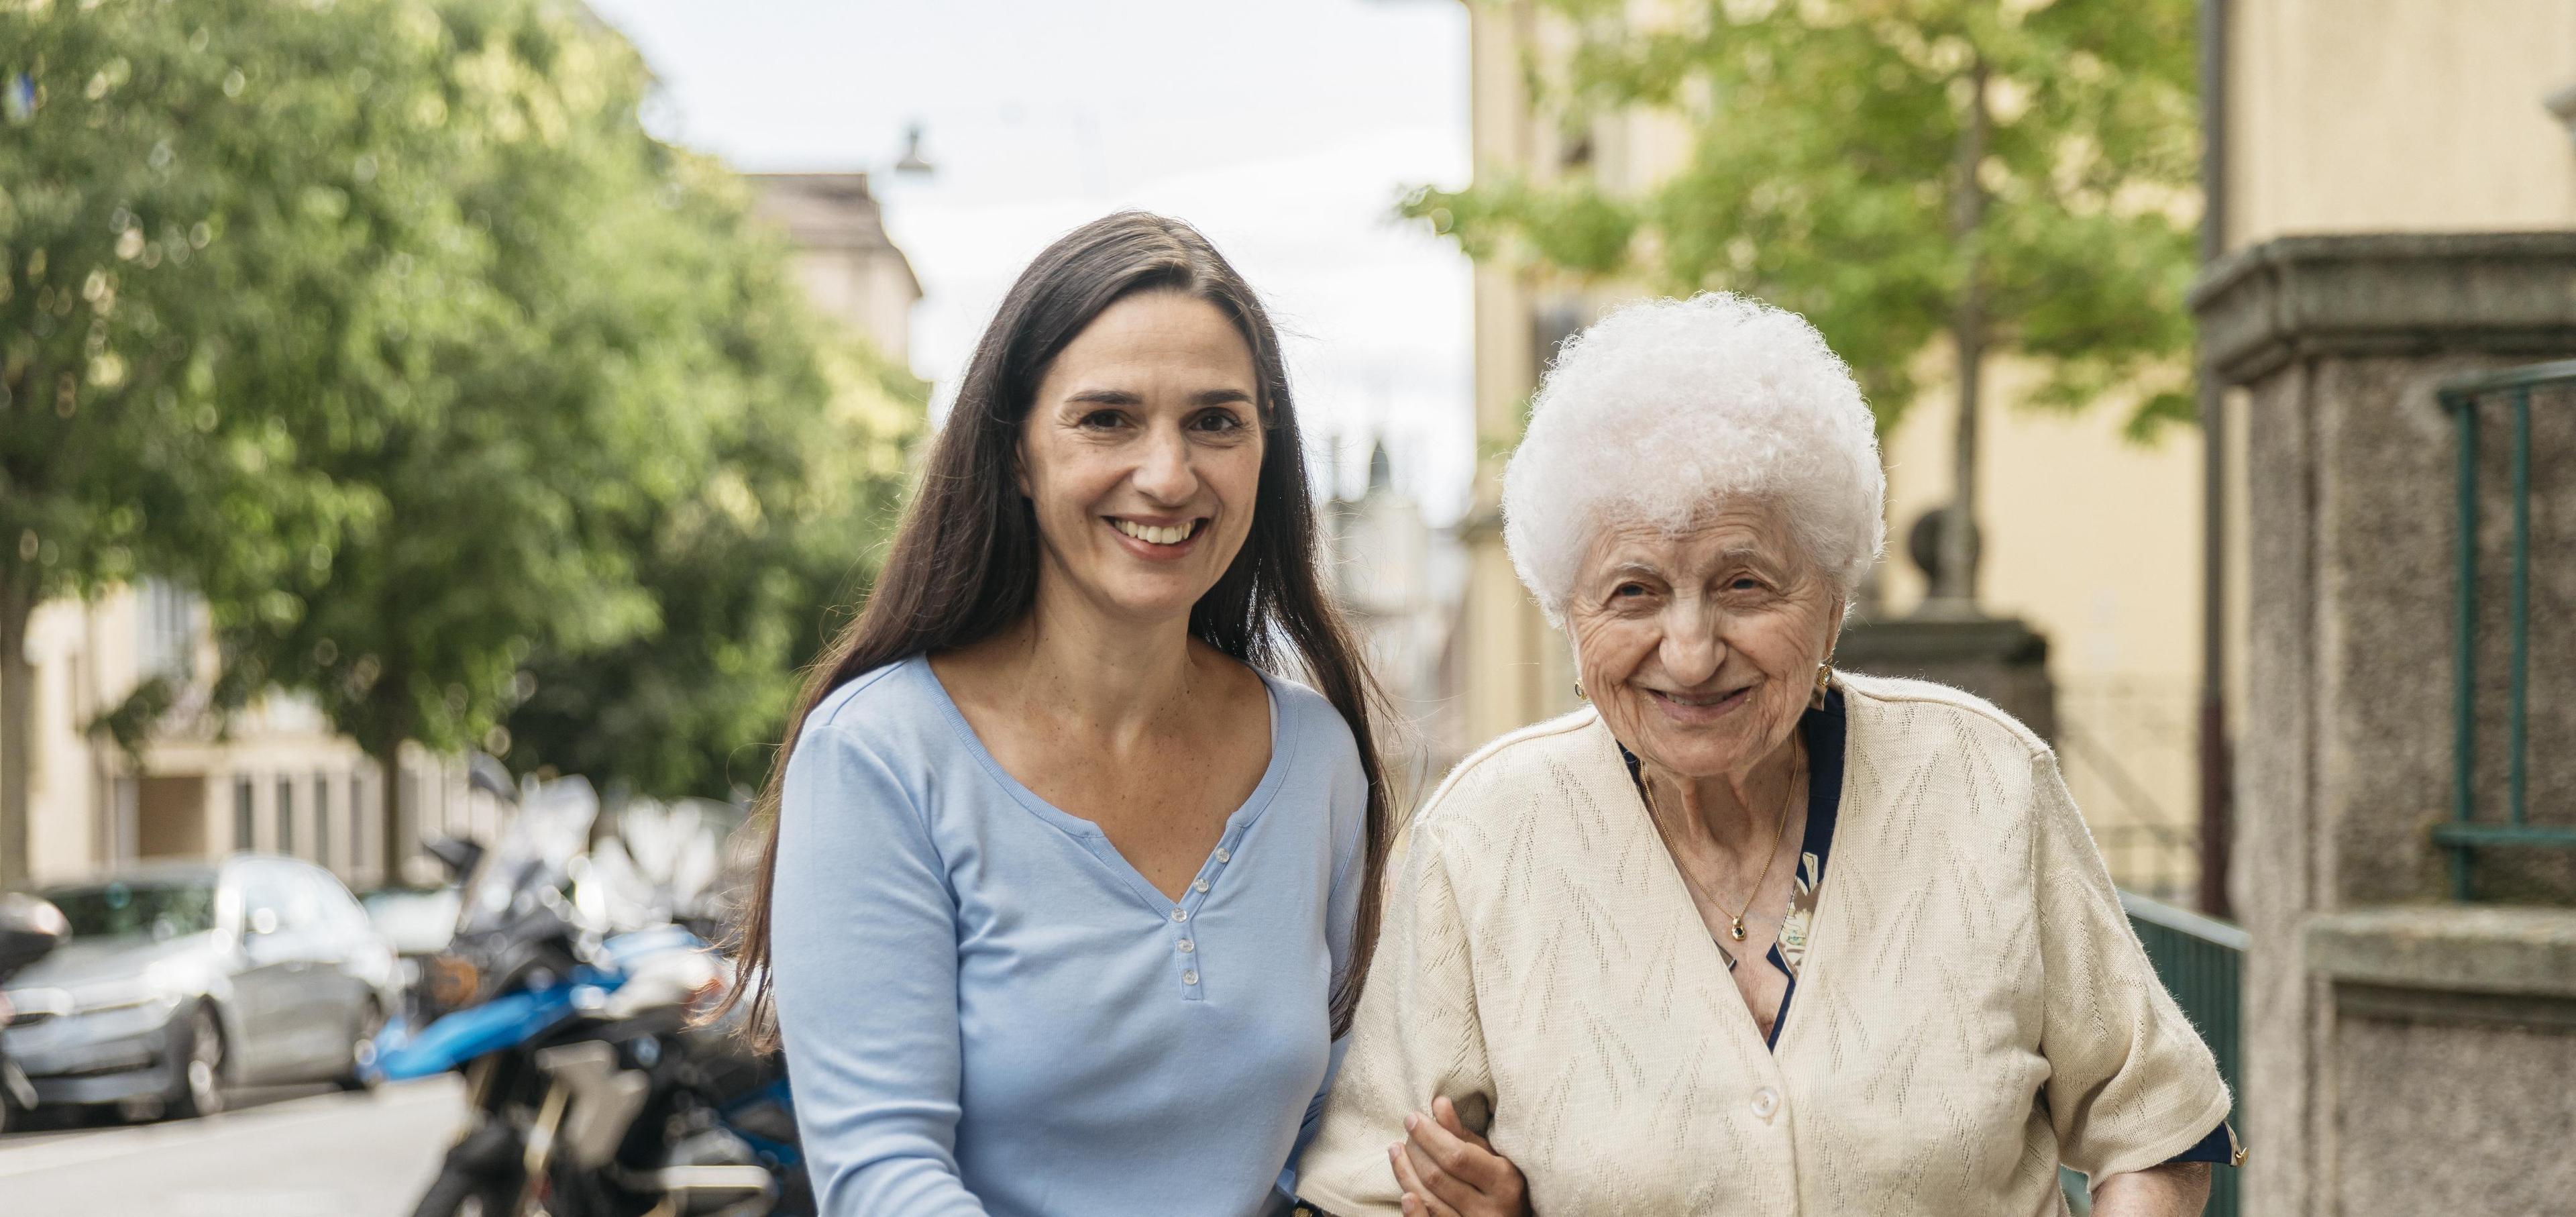 Eine jüngere Frau Arm in Arm mit einer älteren Dame beim Spaziergang.